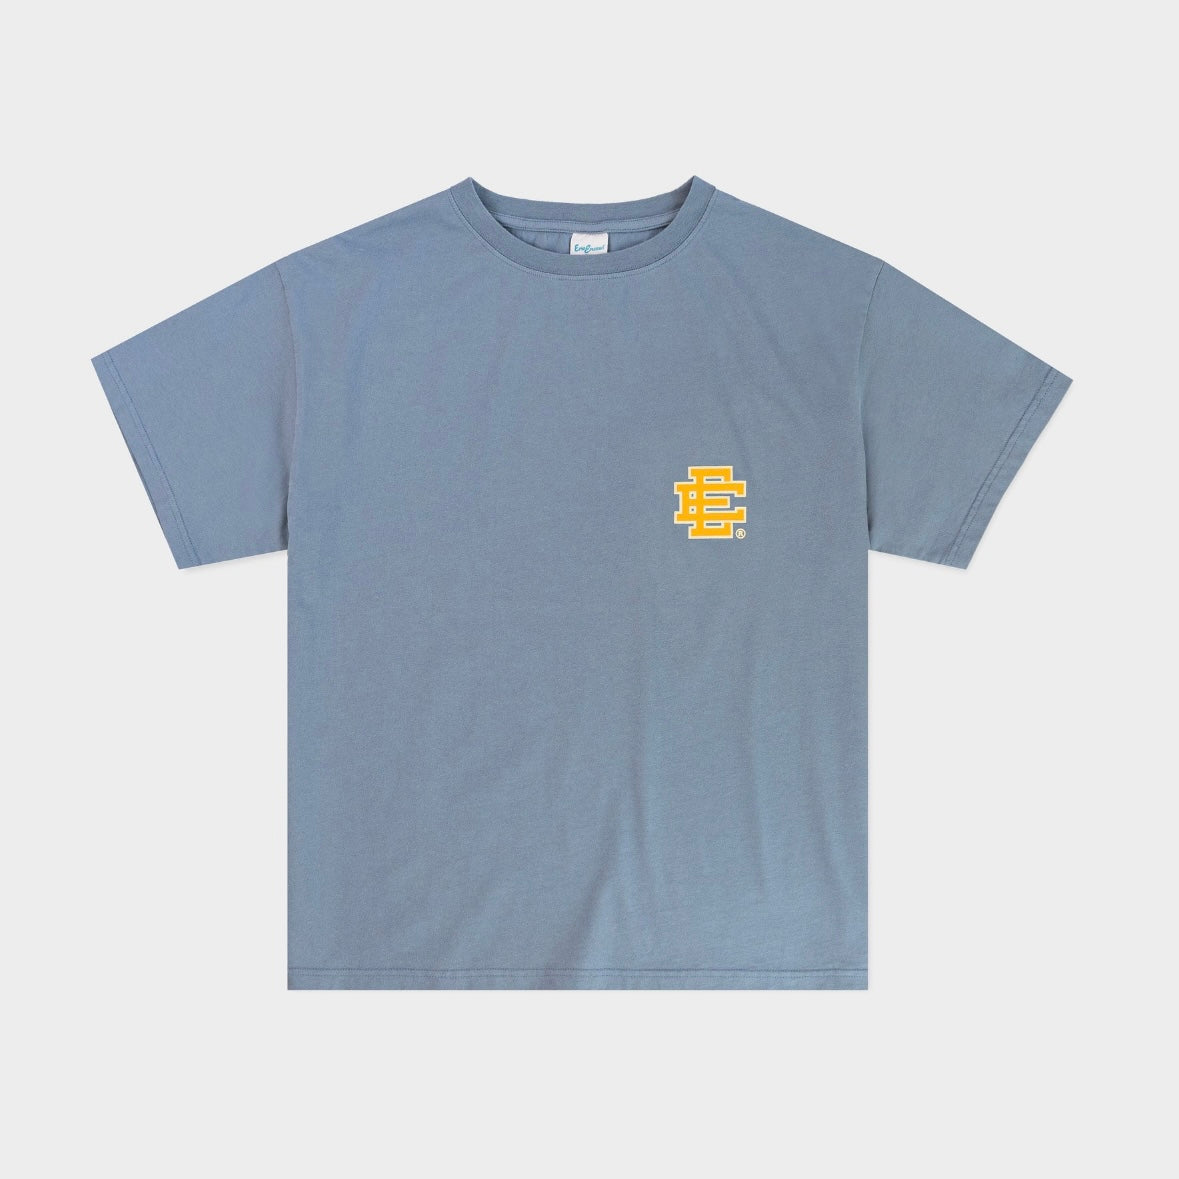 Eric Emanuel Troposphere Blue Gold T-Shirt Front VIew